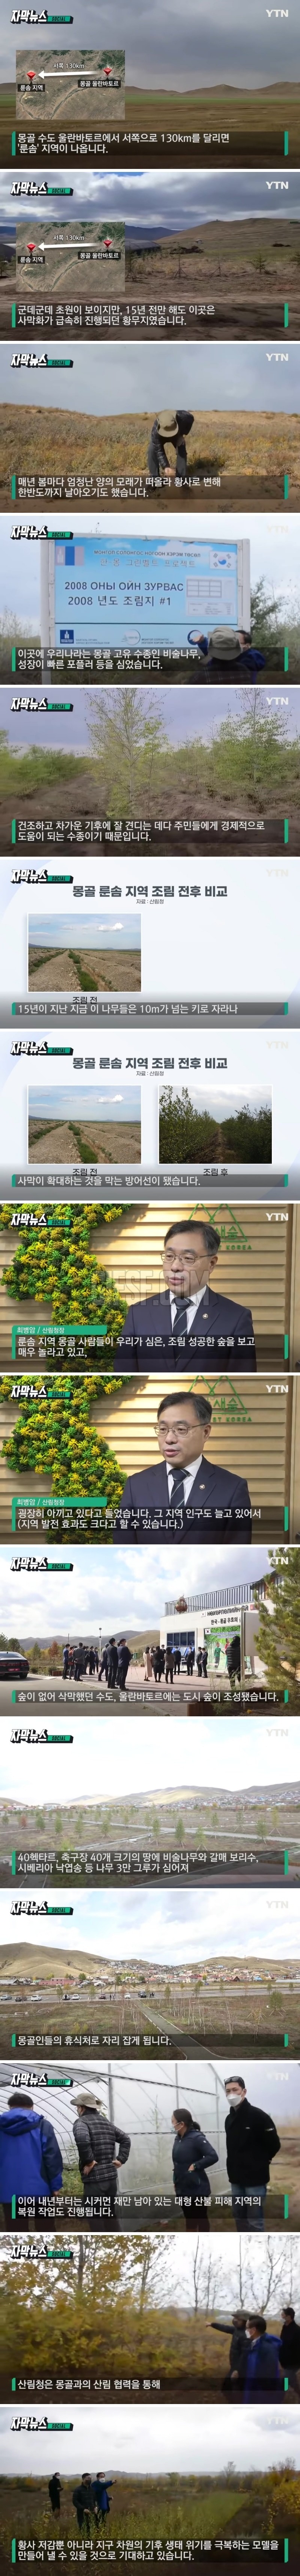 한국이 몽골에 심은 나무.15년 지나자 ',놀라운 변화',.jpg